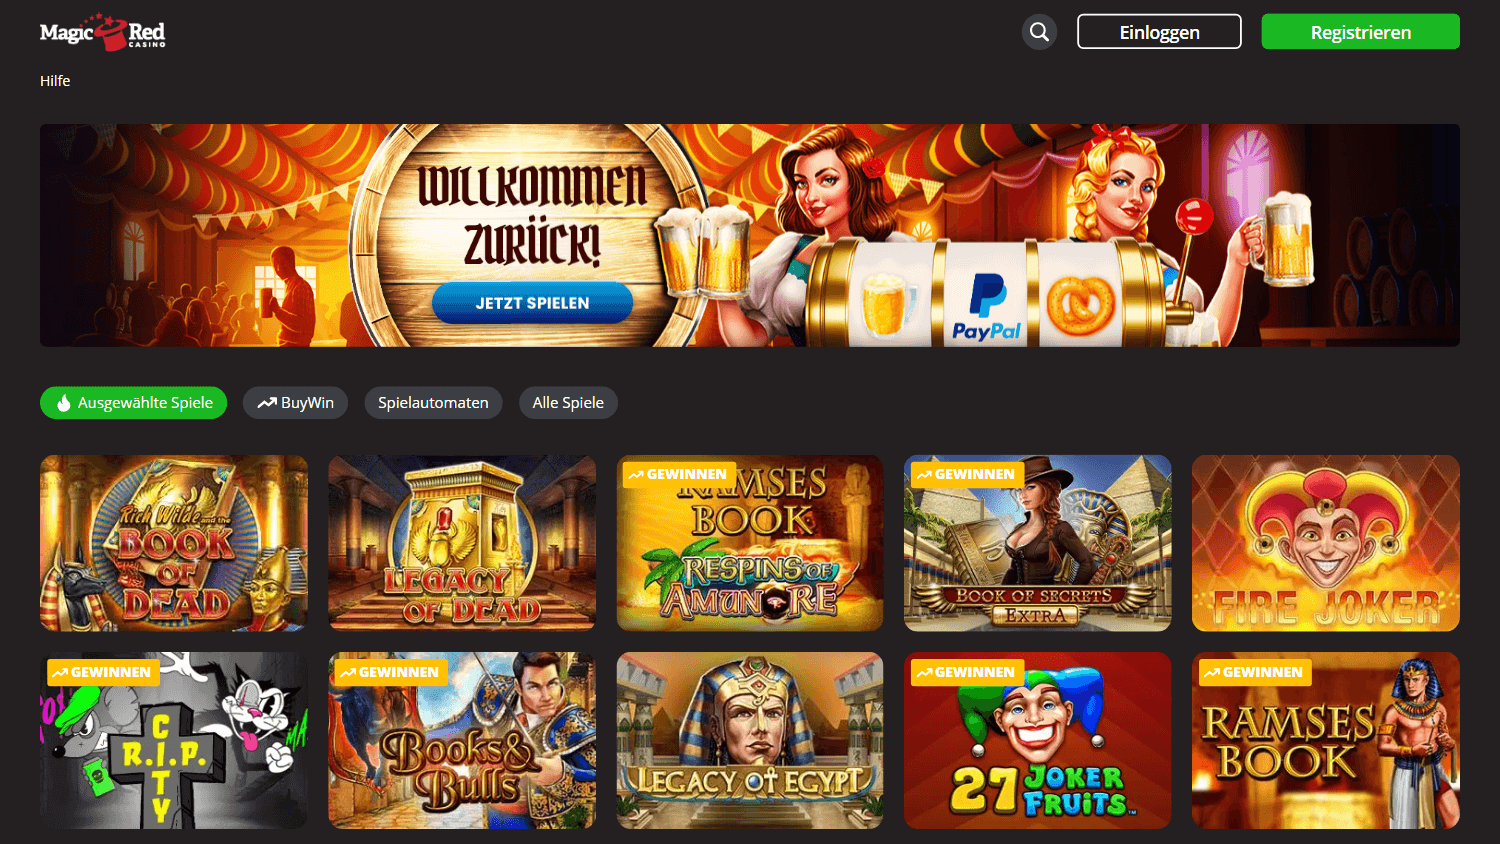 magic_red_casino_de_homepage_desktop